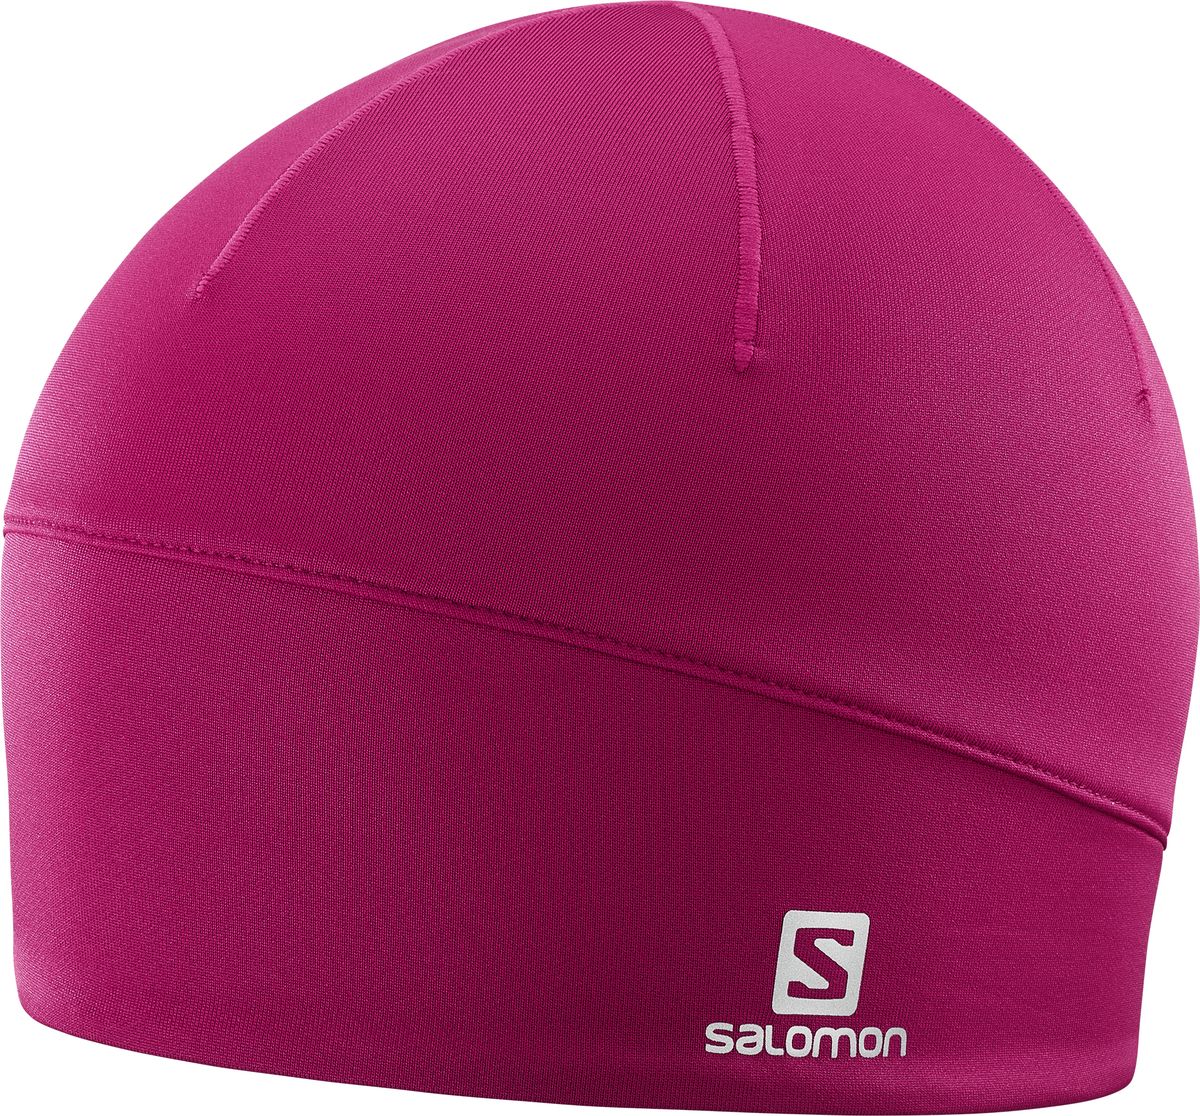 Шапка женская Salomon Active Beanie, цвет: розовый. L40297700. Размер универсальный